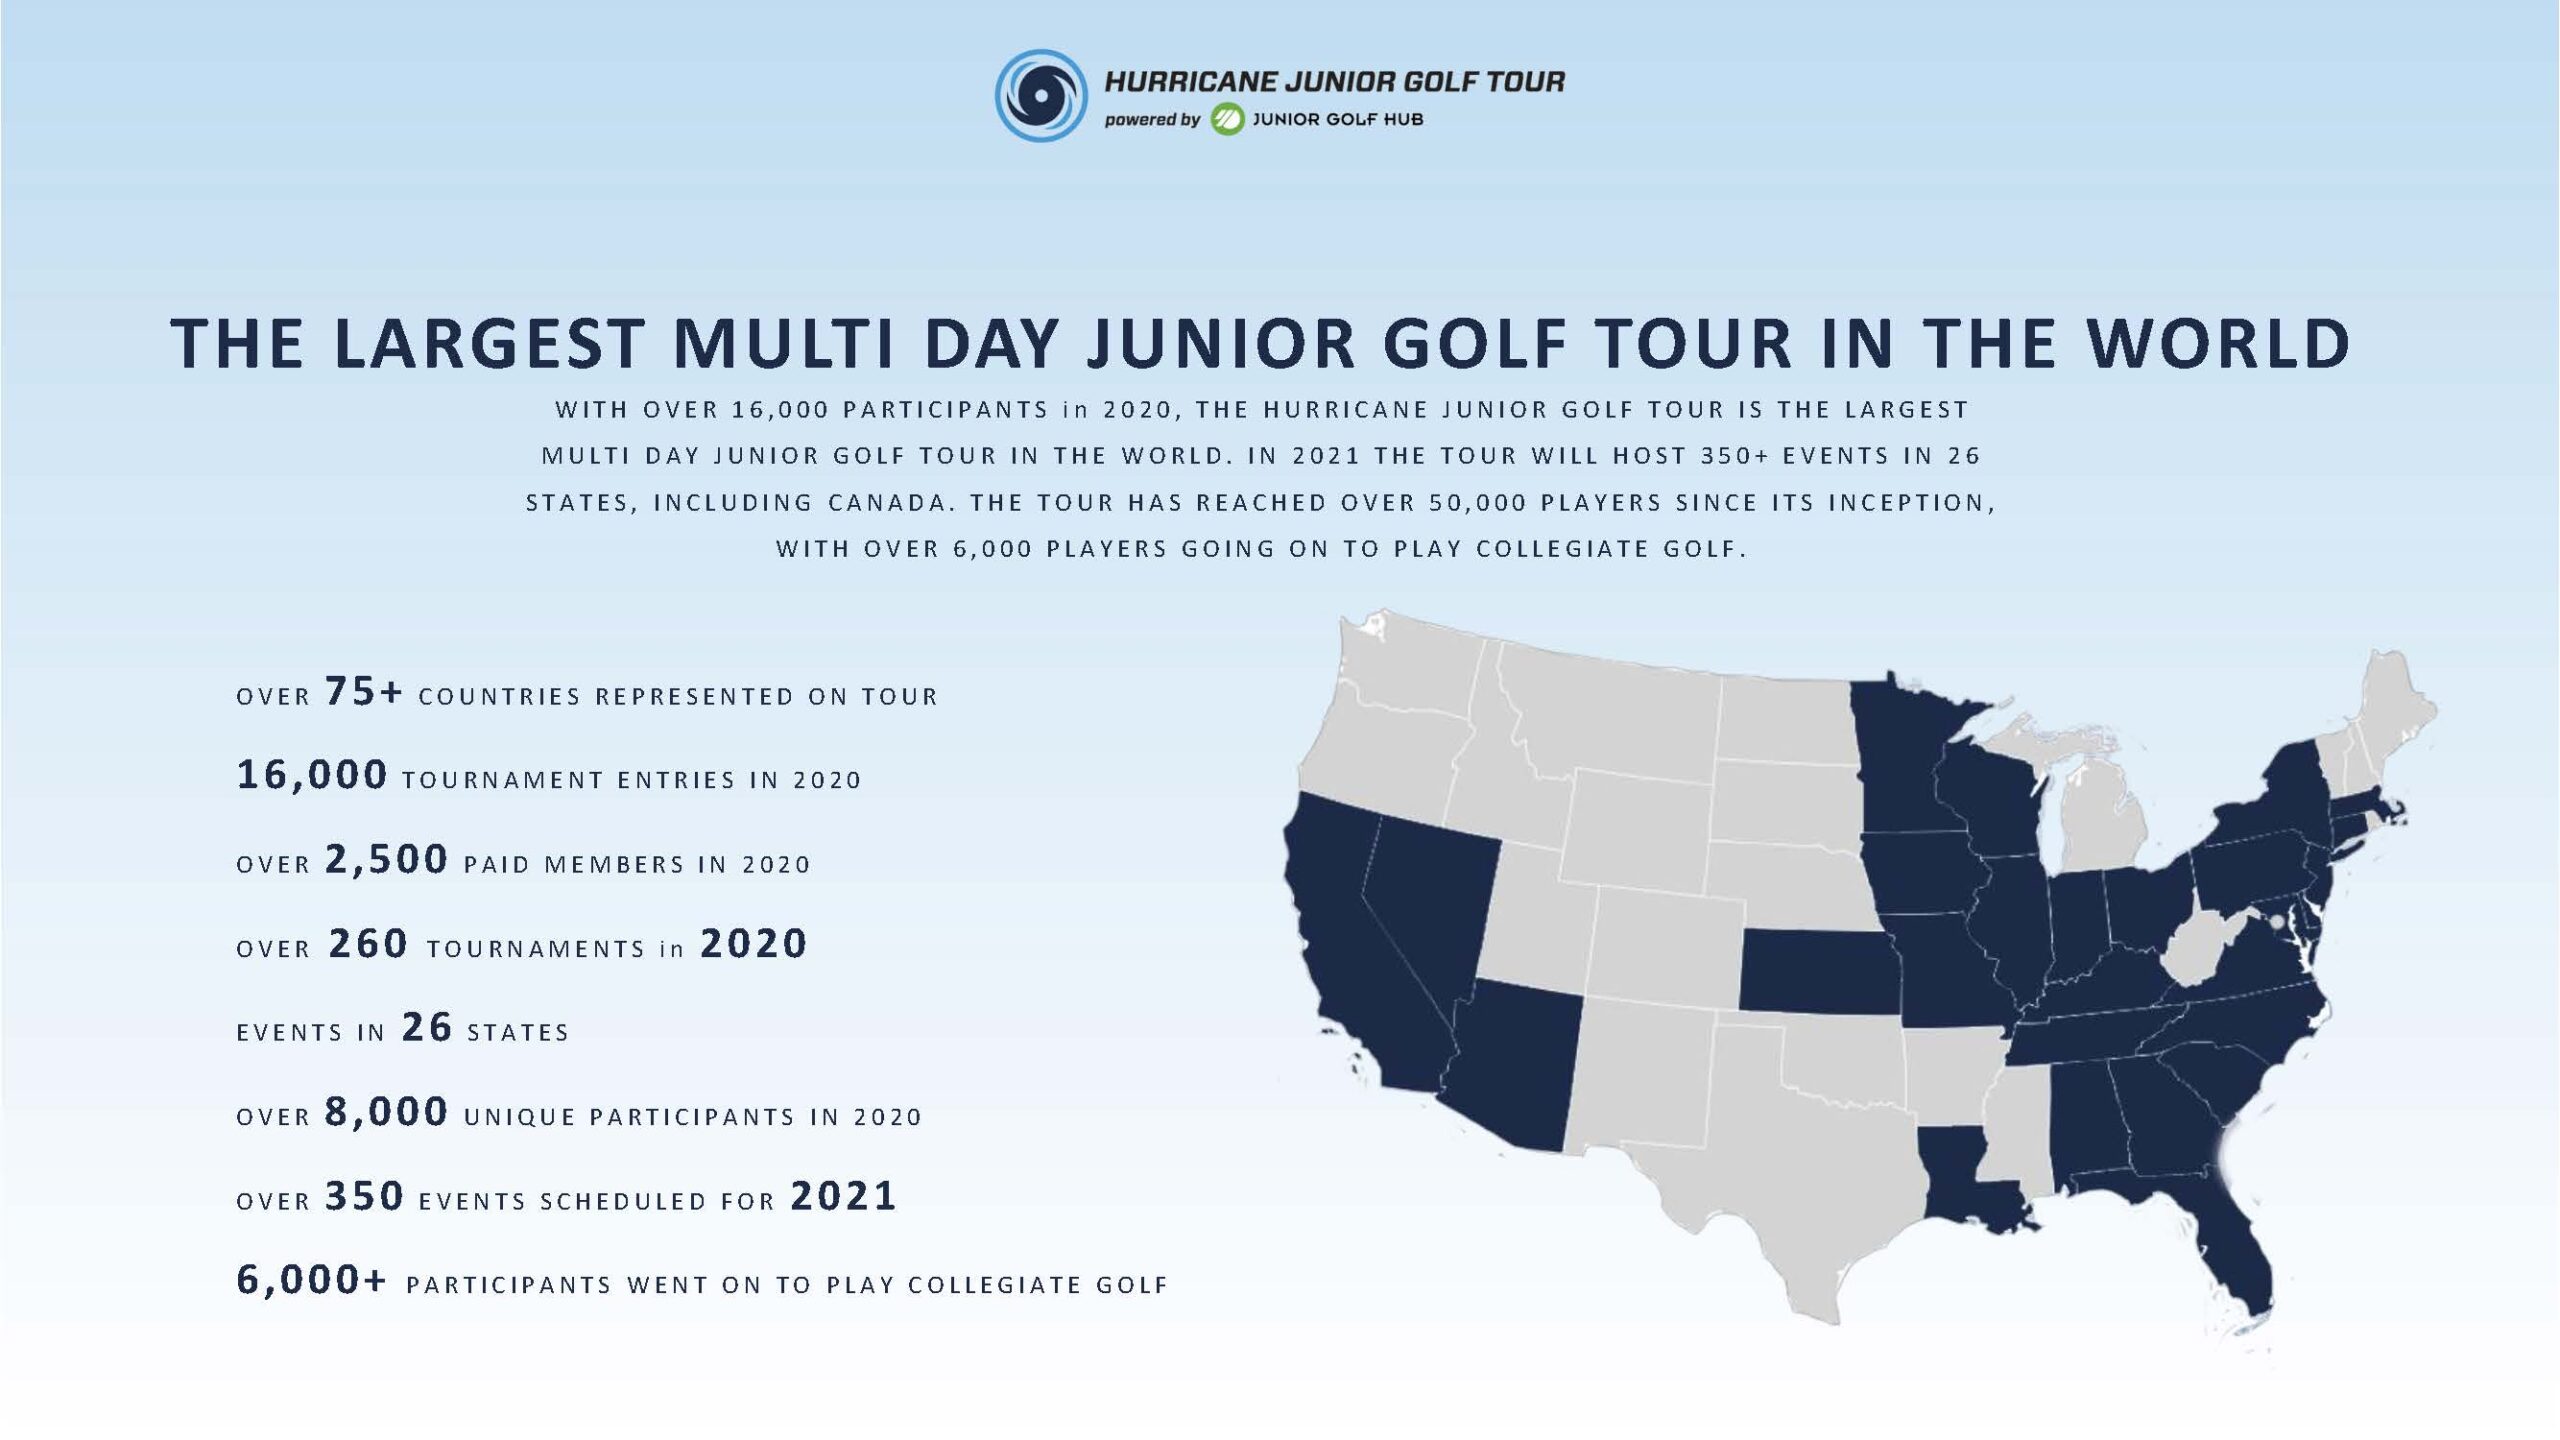 Junior Golf Tour